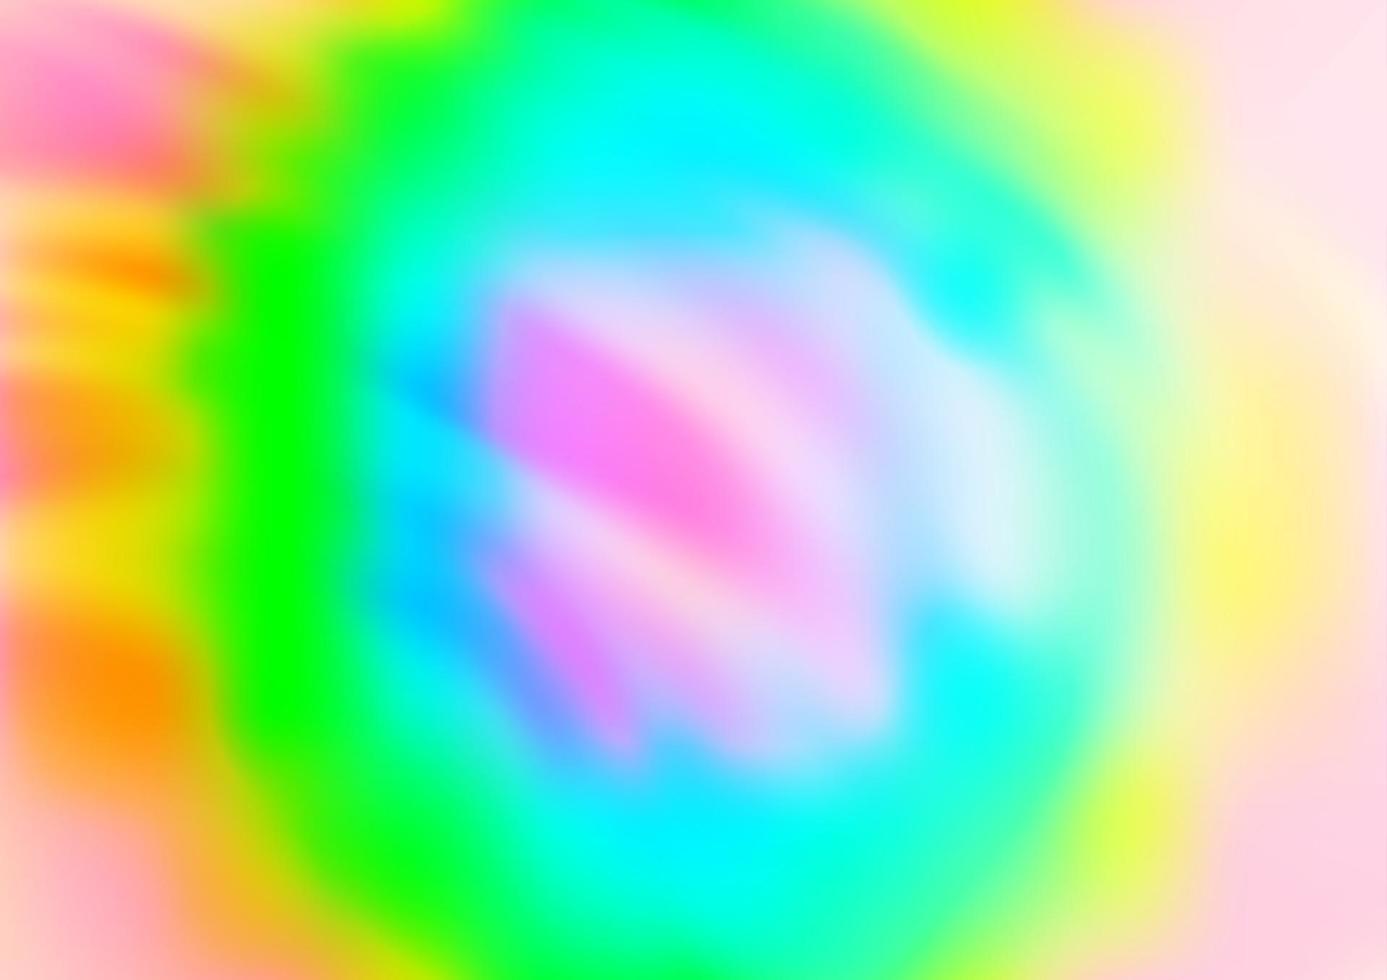 luz multicolor, fondo abstracto del vector del arco iris.